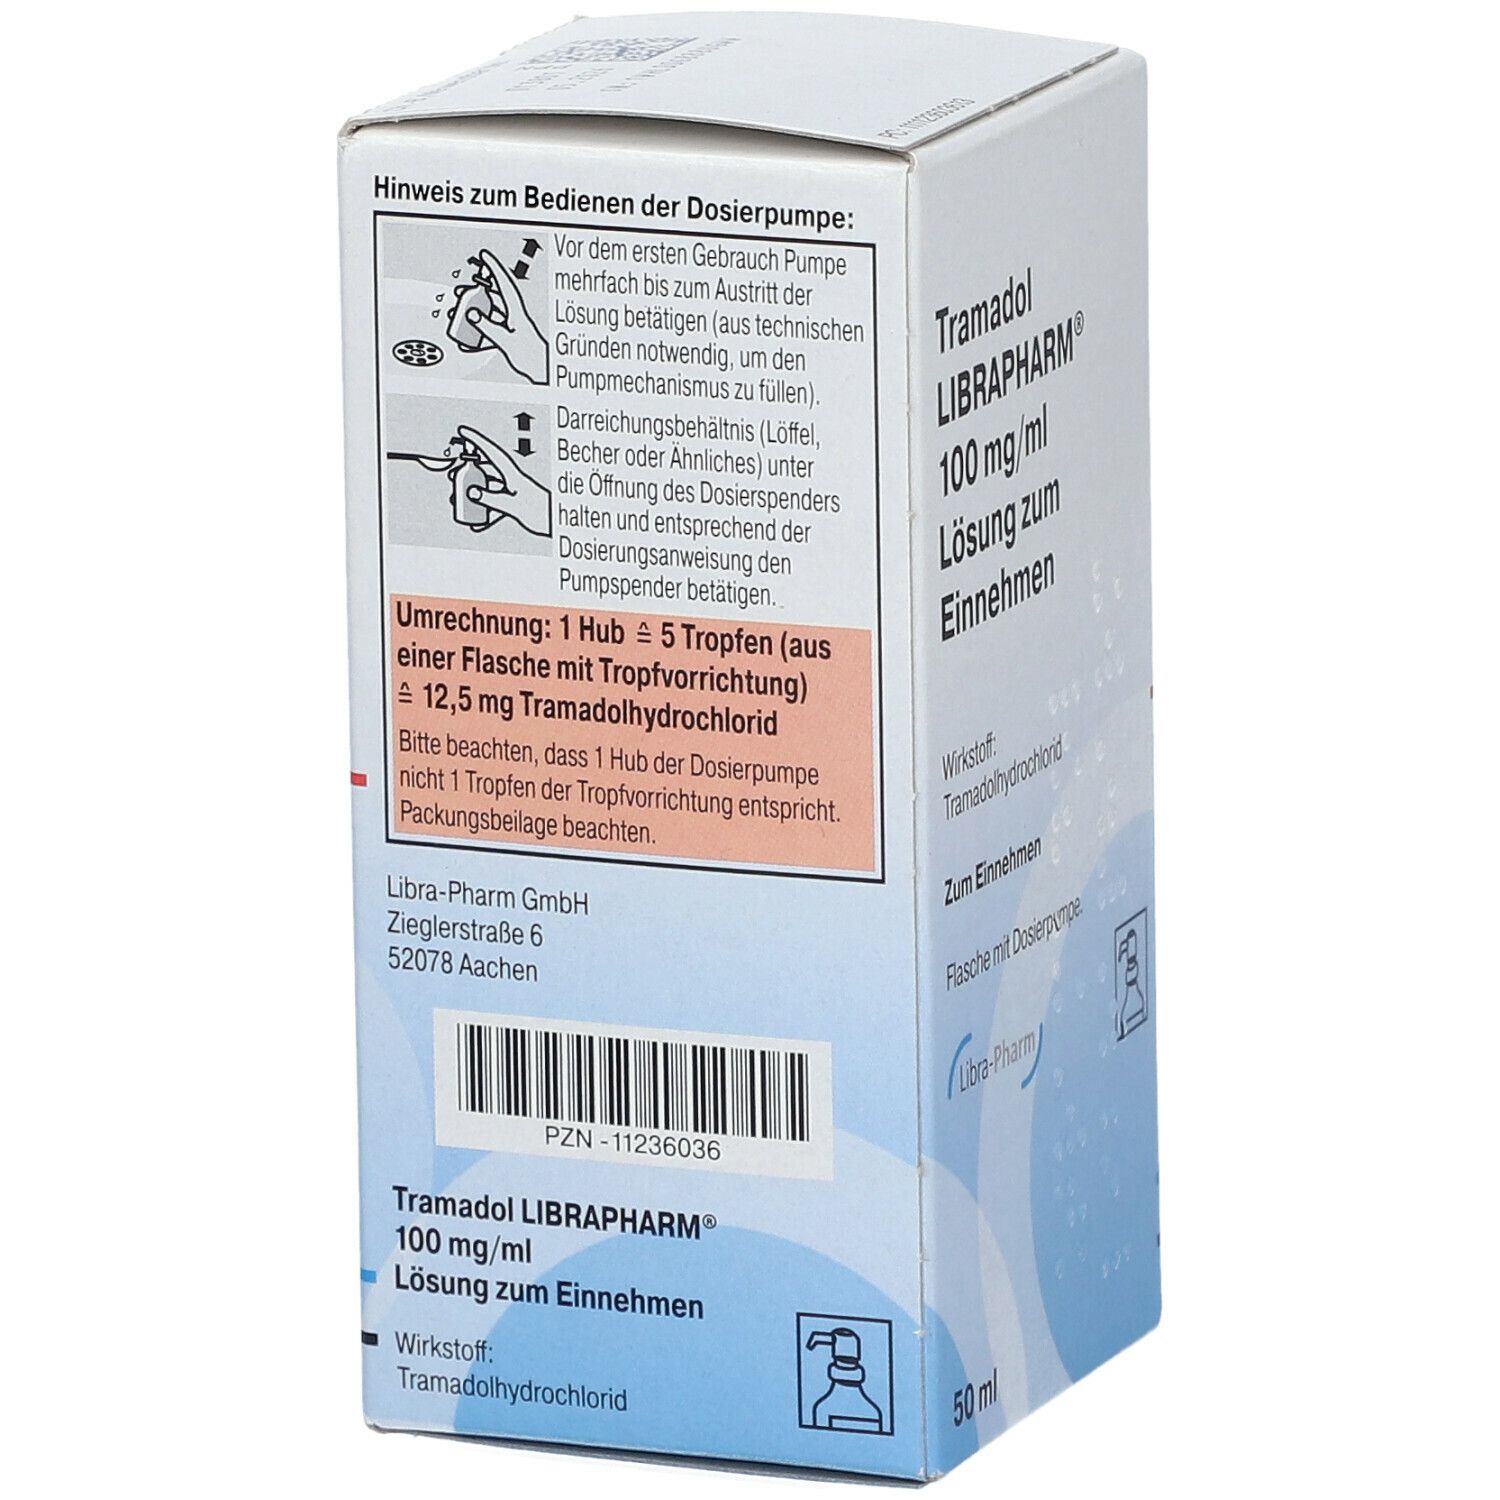 Tramadol LIBRAPHARM® 100 mg/ml